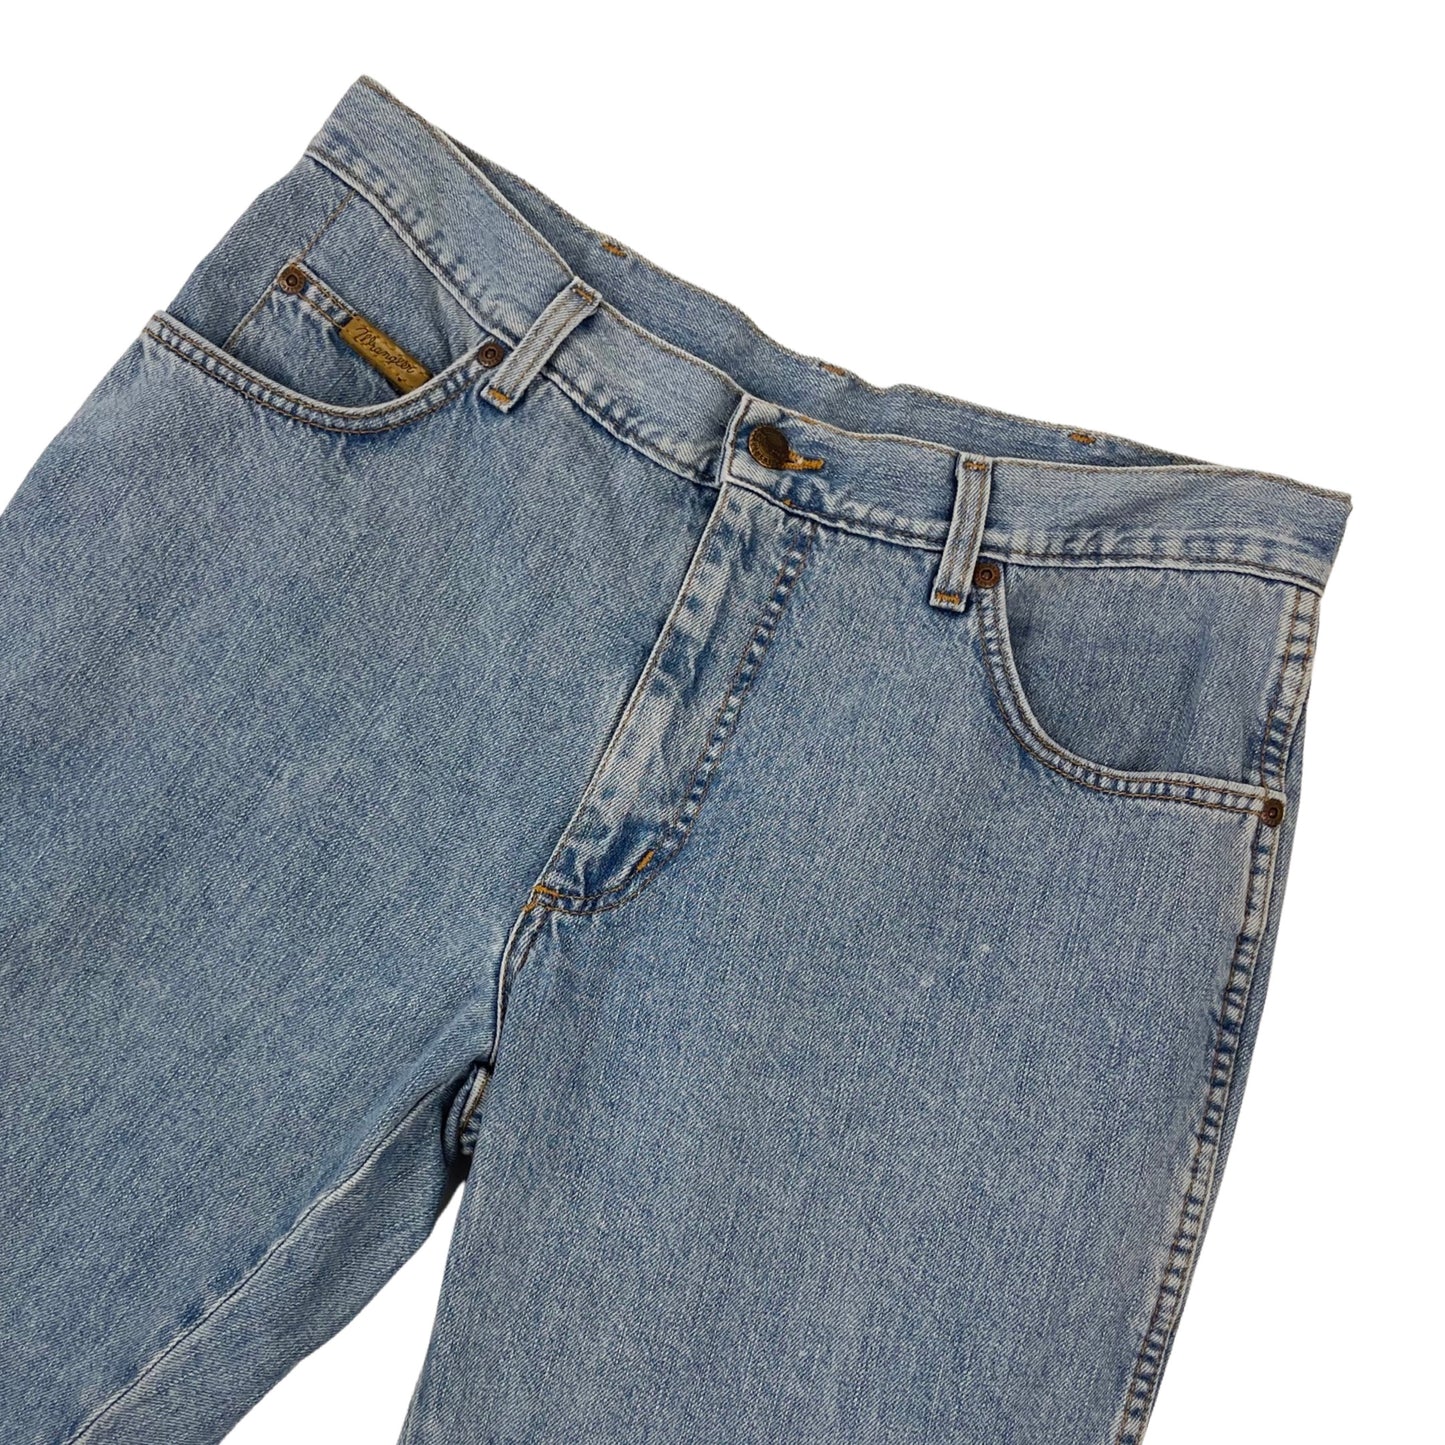 Vintage Wrangler Denim Jeans Light Blue W34L30